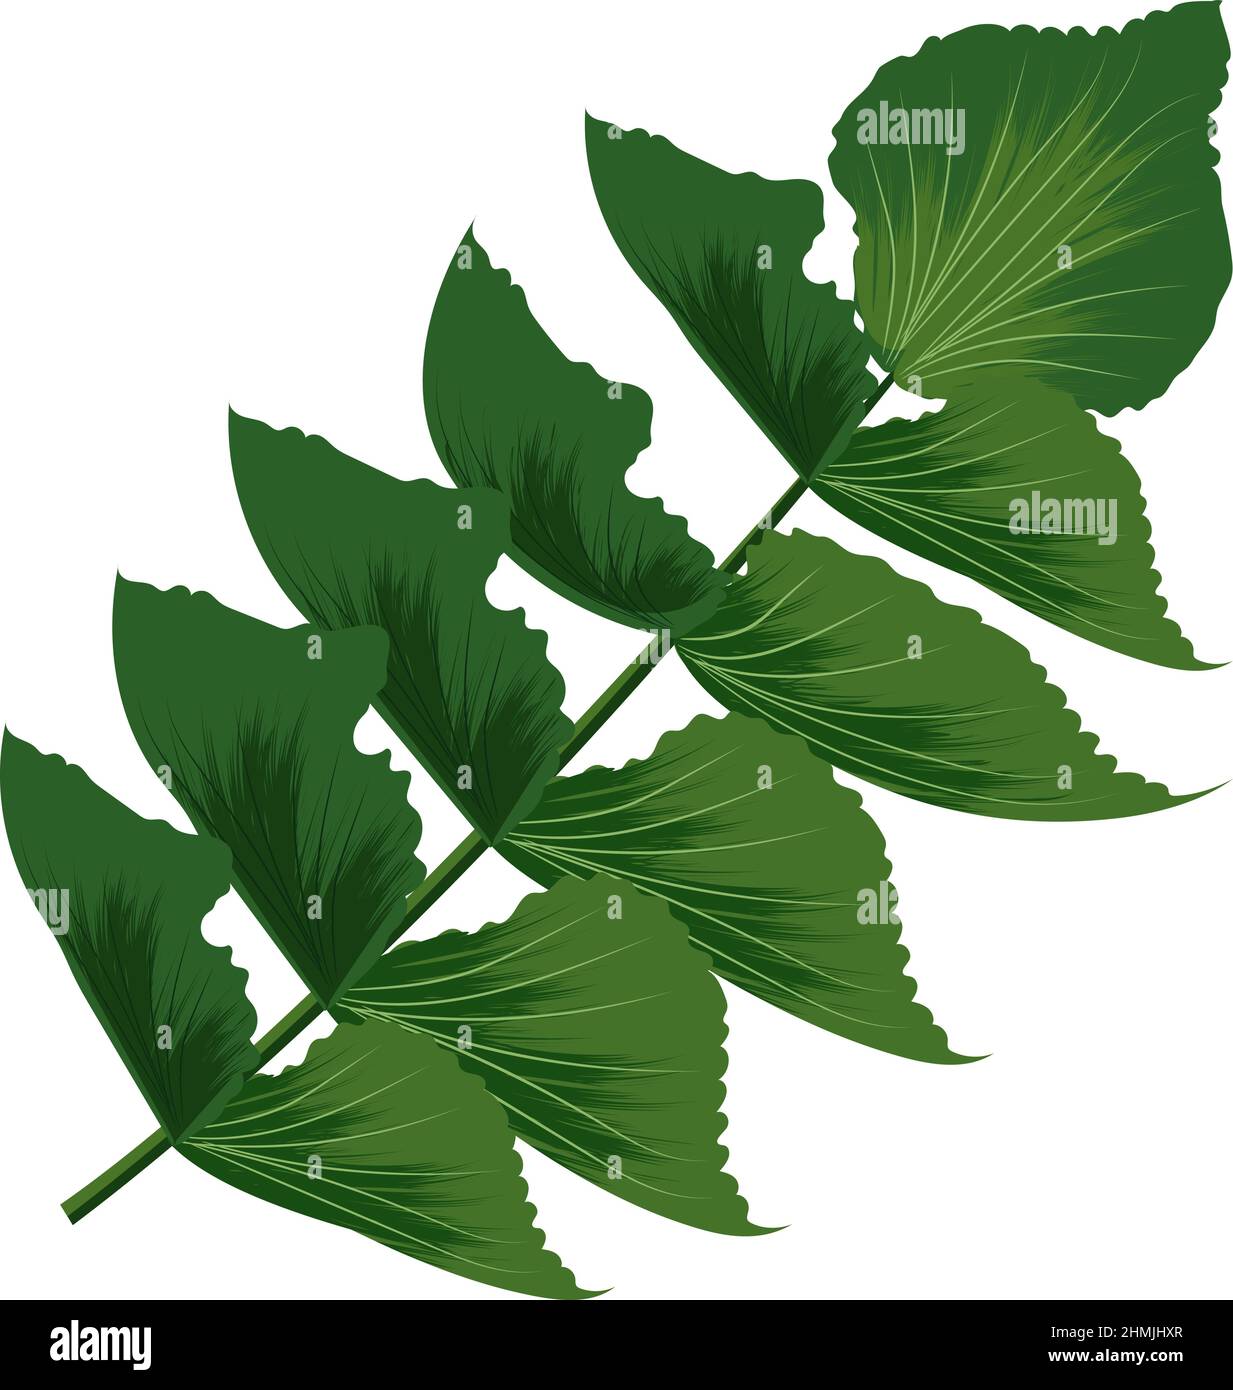 Baumzweig mit grünen Blättern. Exotische Dschungelpflanze Stock Vektor